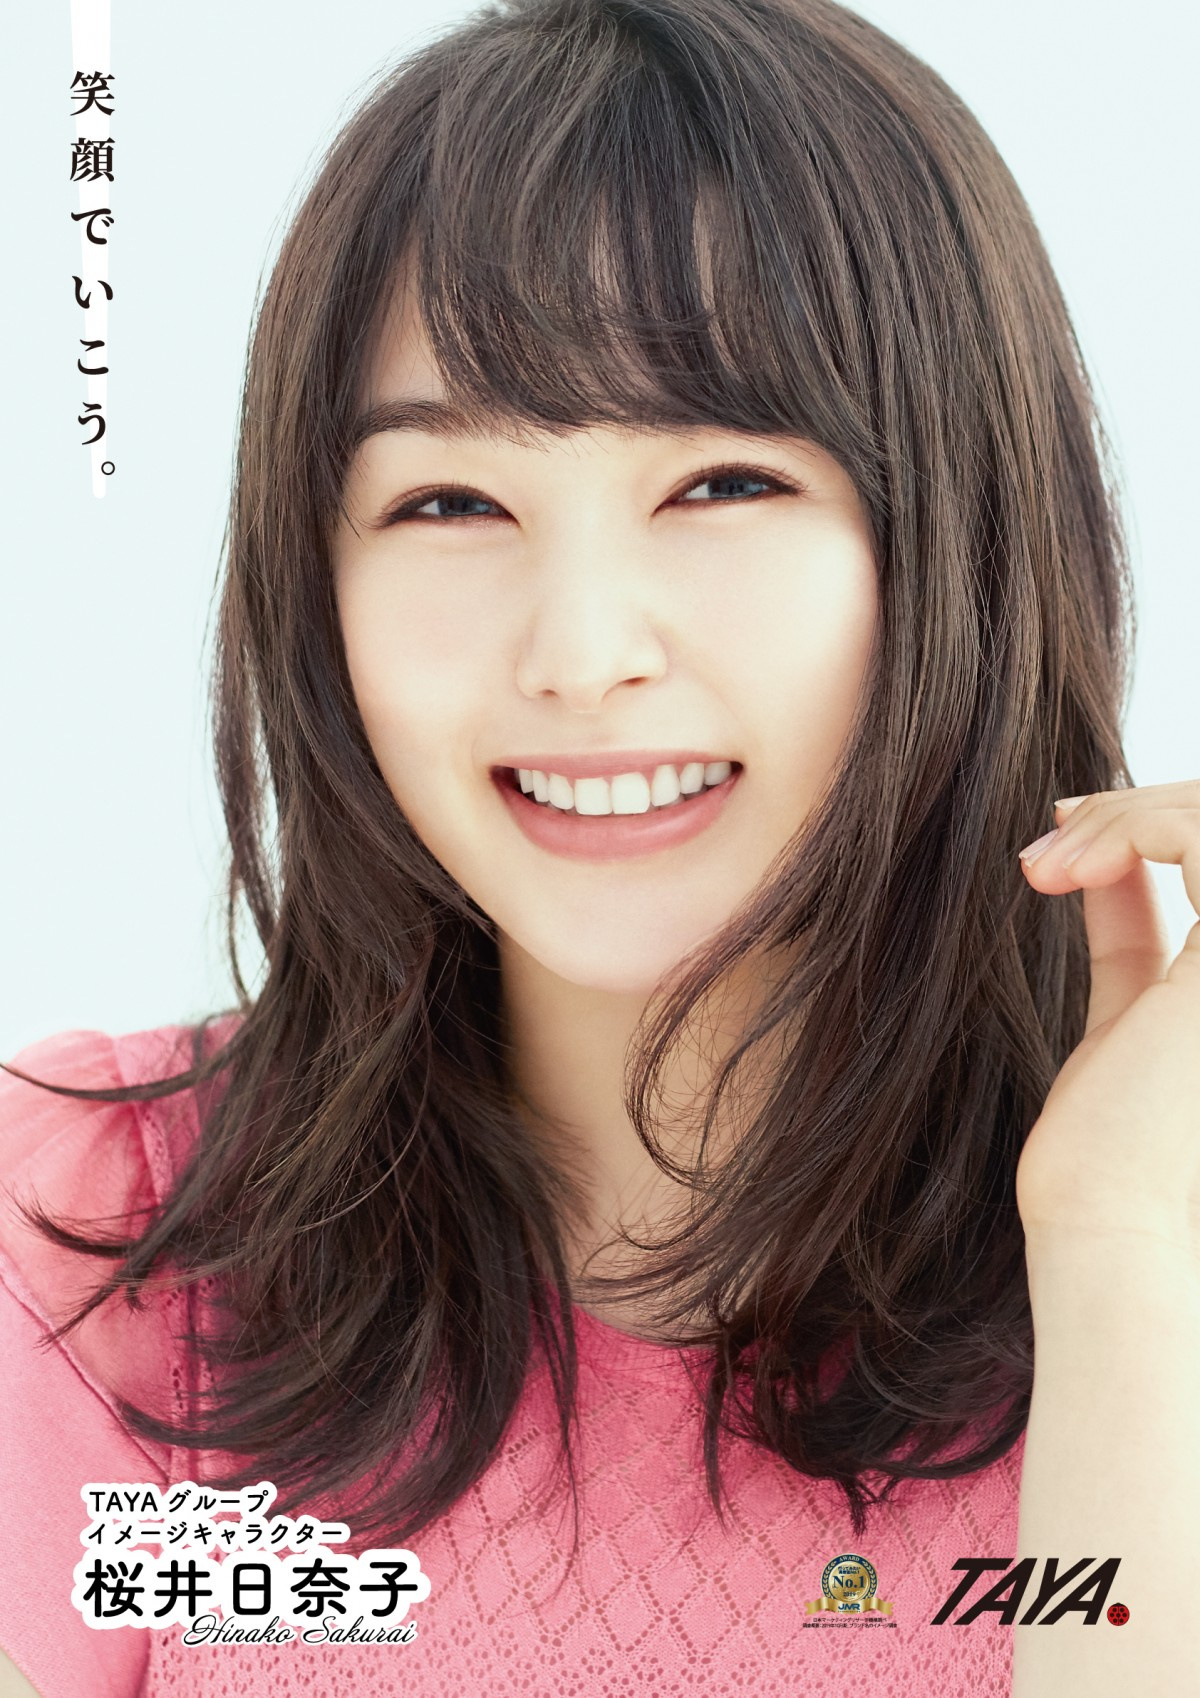 桜井日奈子 かわいいヘア ライフスタイル提案 美容室tayaグループイメージキャラクター就任 Oricon News